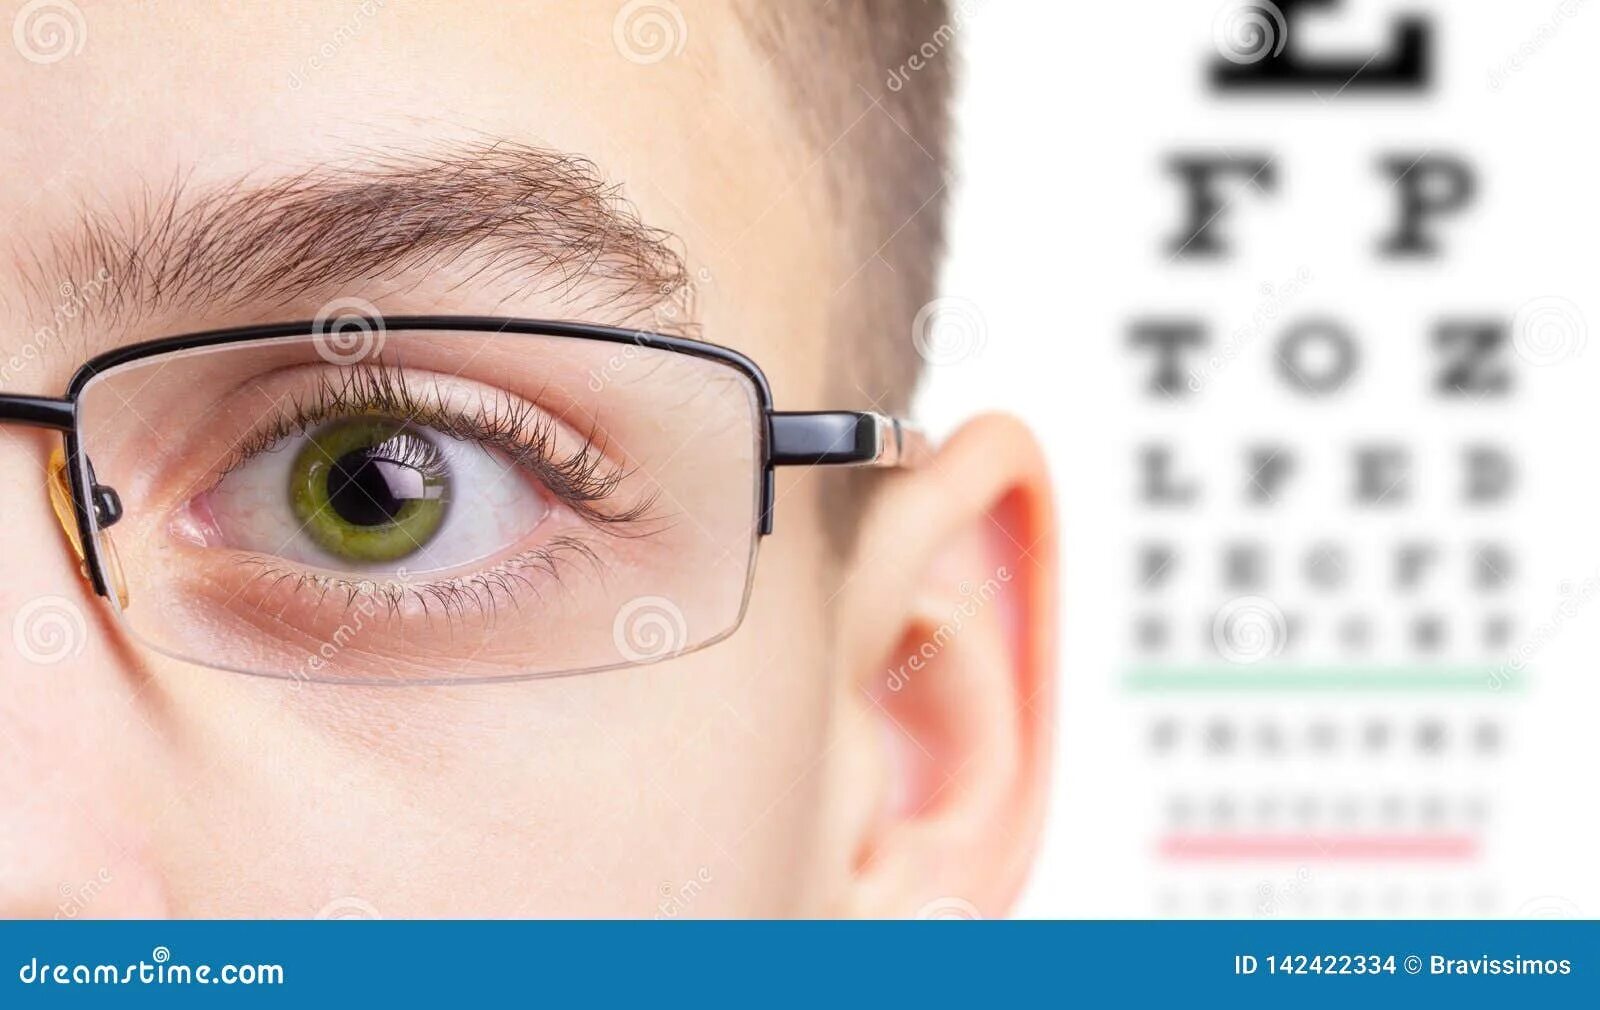 Тест на очки для зрения. Контактные линзы корейские близорукость. Поляризационные линзы оптометрия. Магнитные очки для глаз для зрения. Начала падать зрение